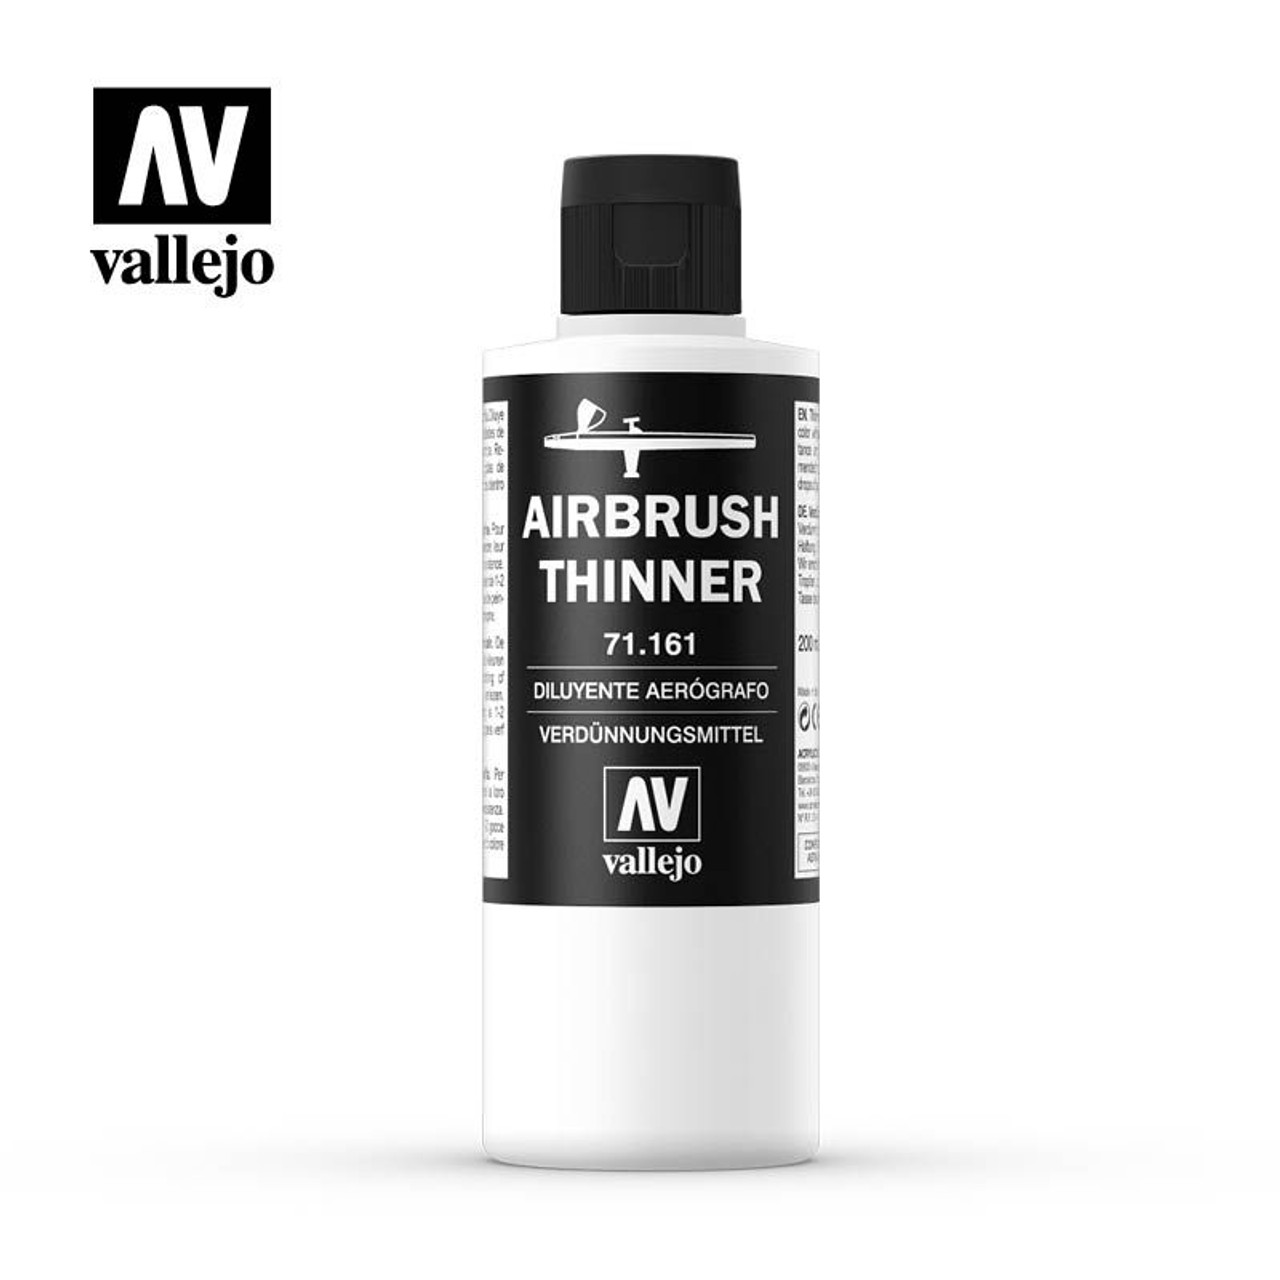 Vallejo - Airbrush Thinner (200ml)